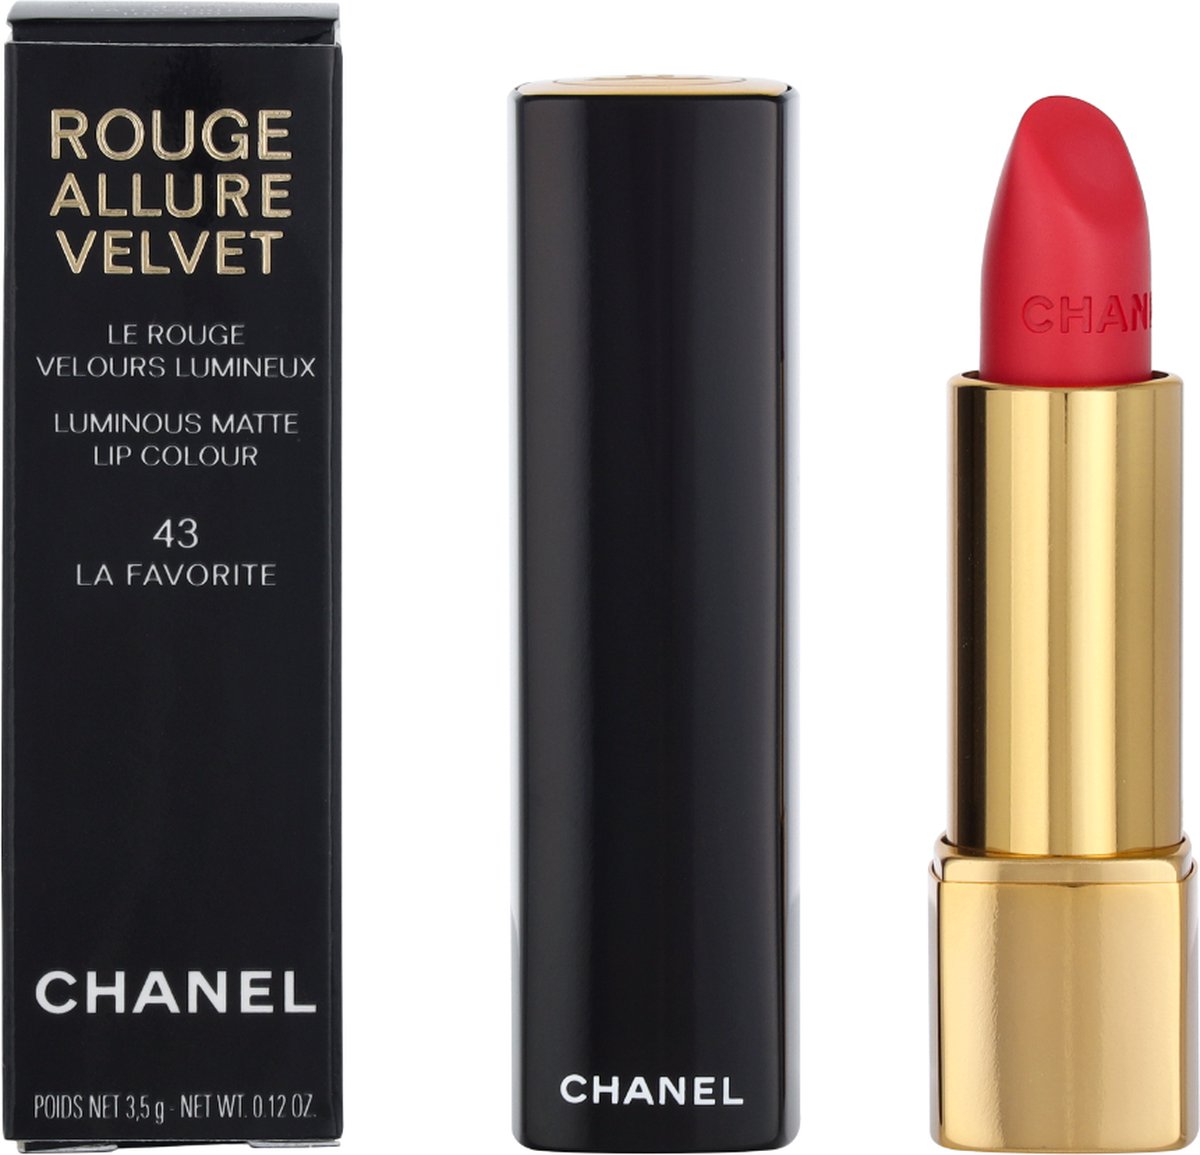 chanel lipstick for women velvet